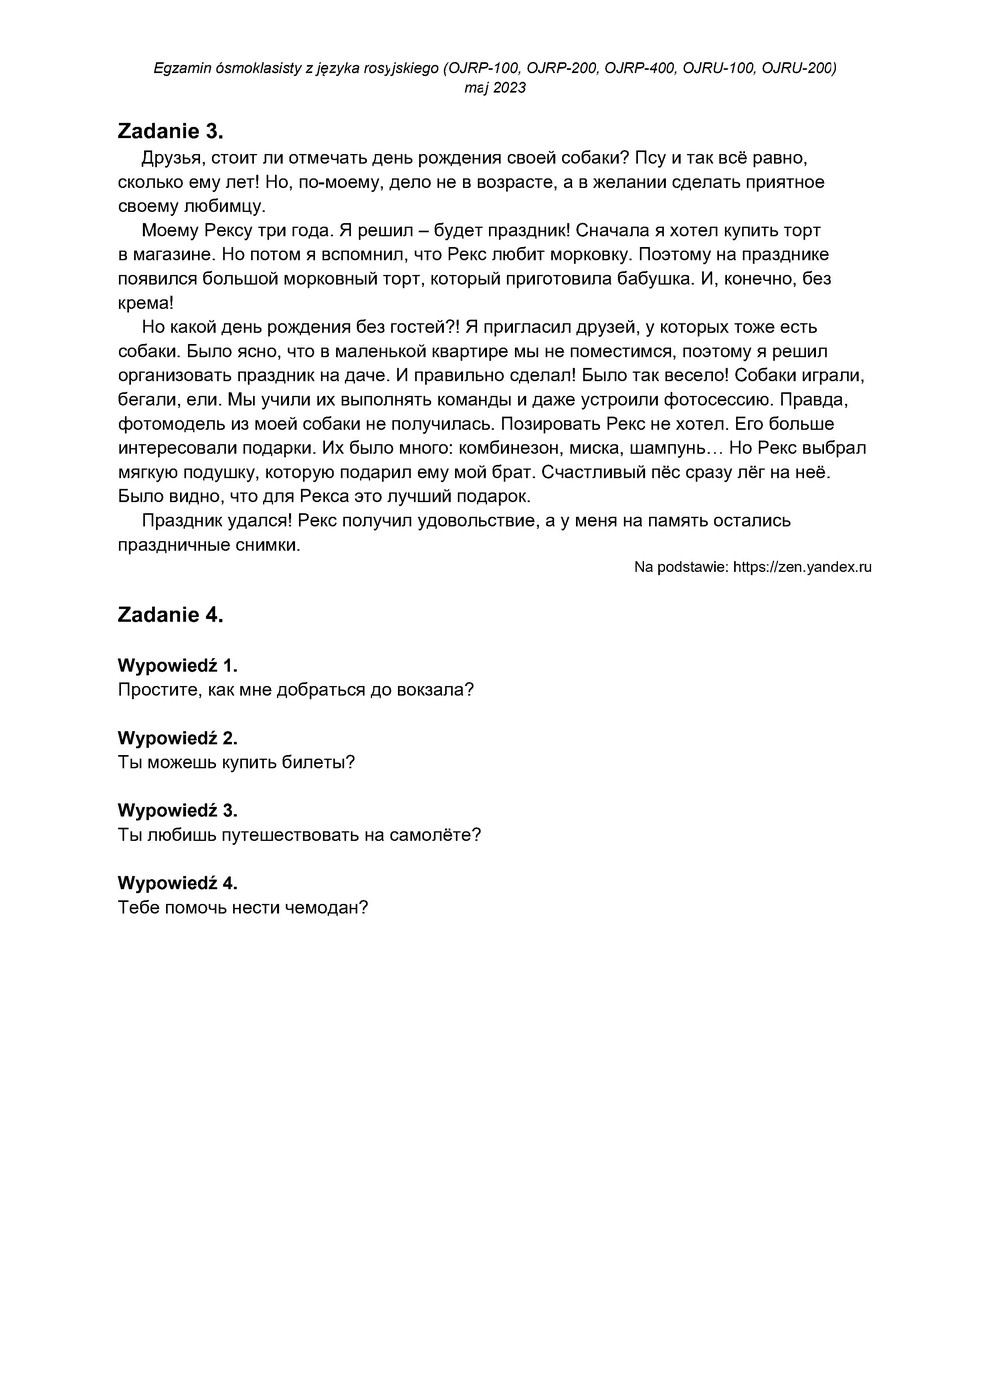 transkrypcja - język rosyjski - egzamin ósmoklasisty 2023 - 0003